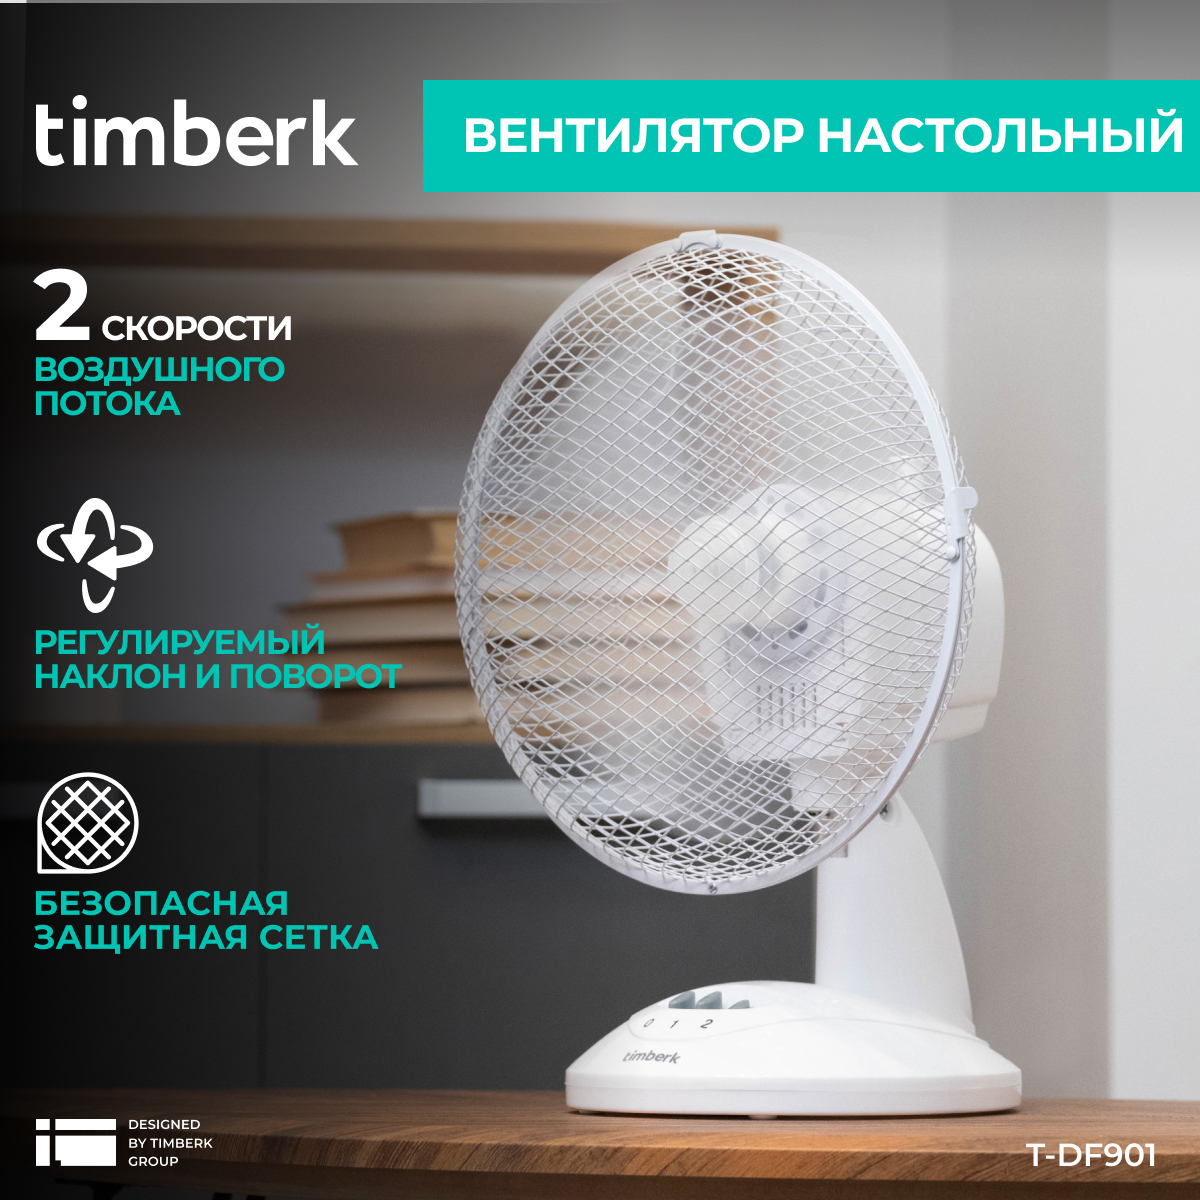 Вентилятор напольный Timberk T-DF901, купить в Москве, цены в интернет-магазинах на Мегамаркет